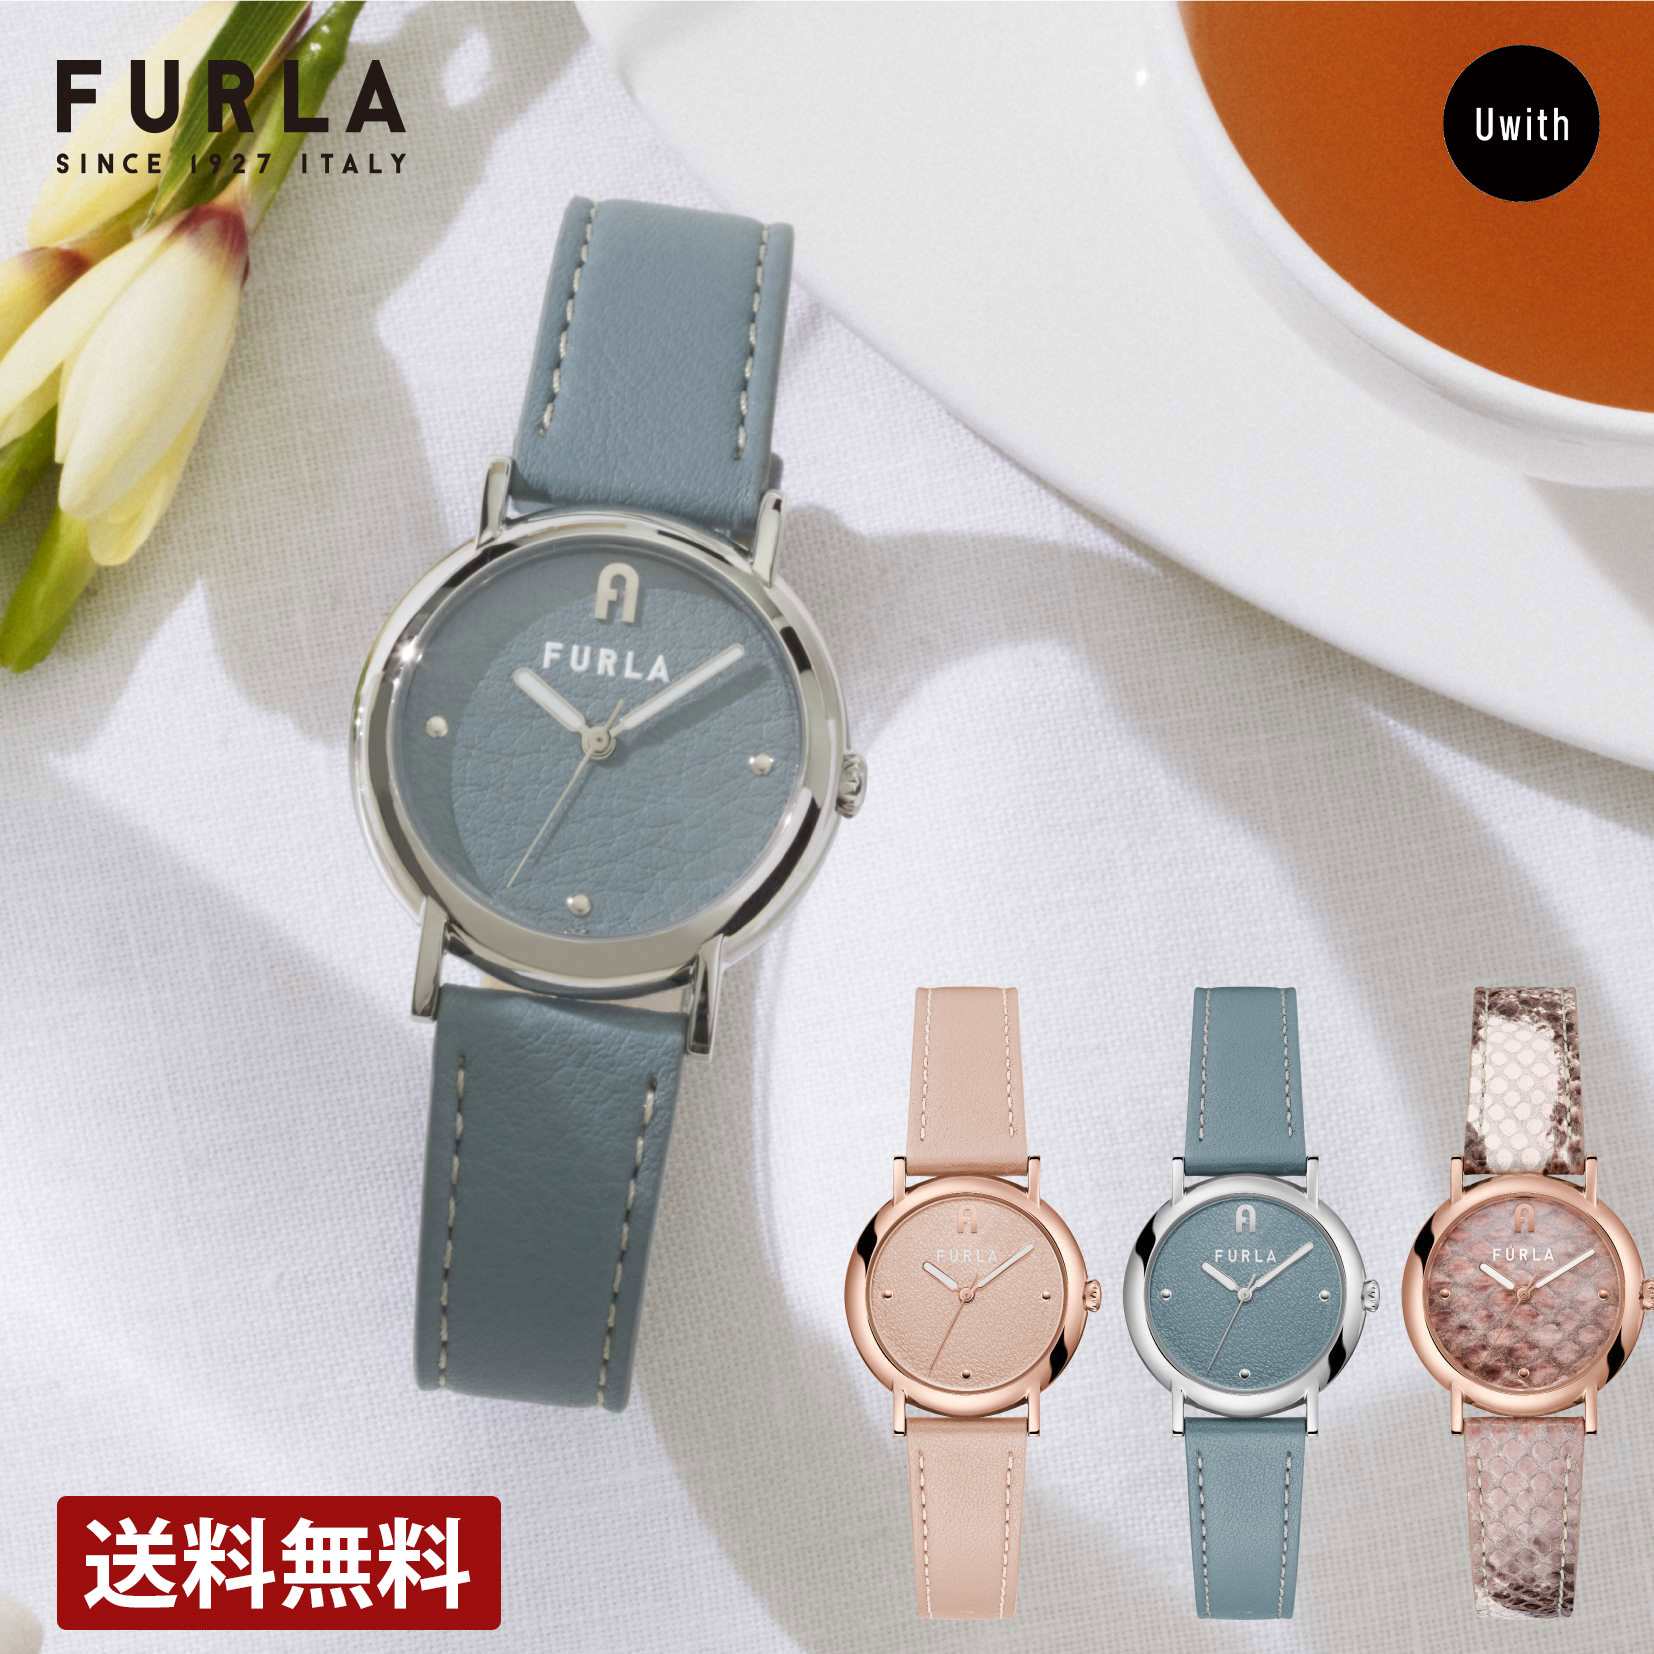 【公式ストア】FURLA フルラ レディース 腕時計 FURLA EASY SHAPE 全3モデル ピンク / ブルー / グレー WW00024013L3 / WW00024014L1 / WW00024018L3 ブランド 時計 プレゼント 女性 ギフト